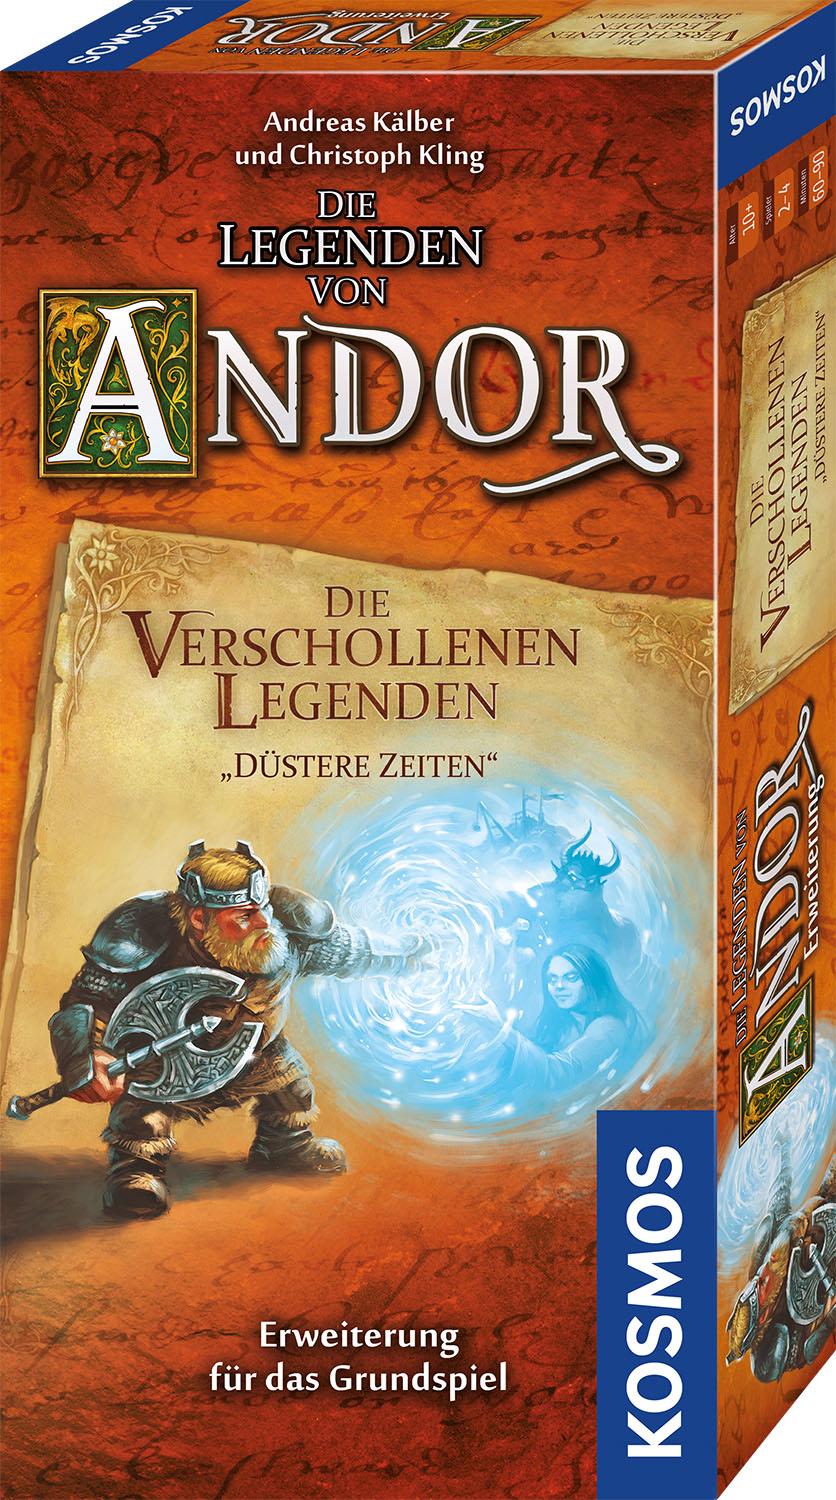 Die Legenden von Andor - Die verschollenen Legenden: Düstere Zeiten